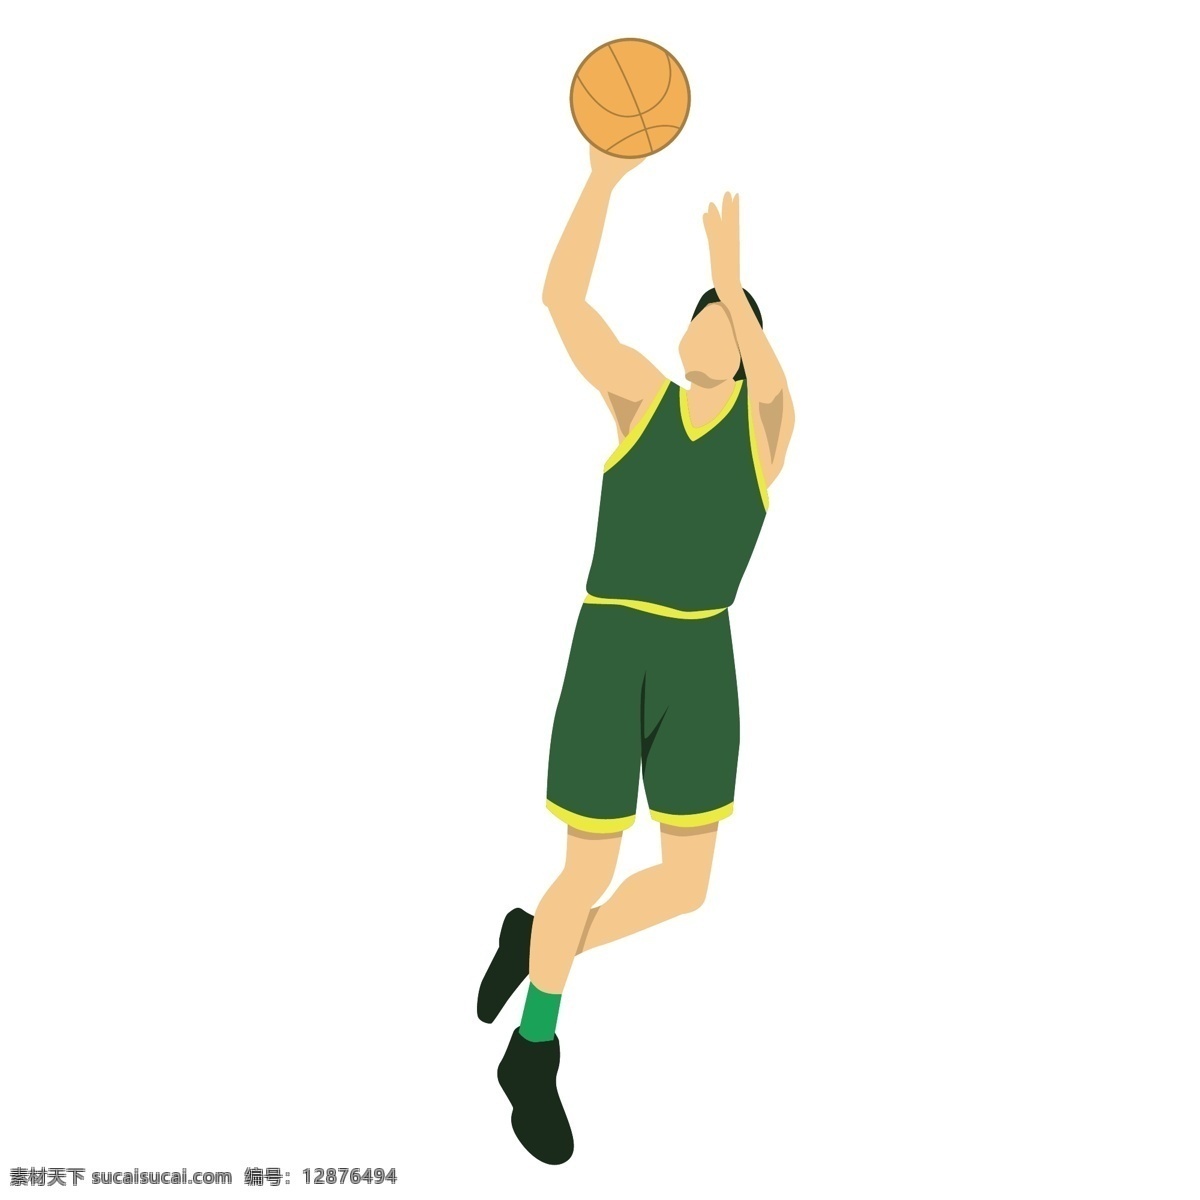 卡通 篮球 运动员 矢量 篮球运动员 体育 体育运动员 打球 打篮球 打球姿势 投篮姿势 姿势 运动姿势